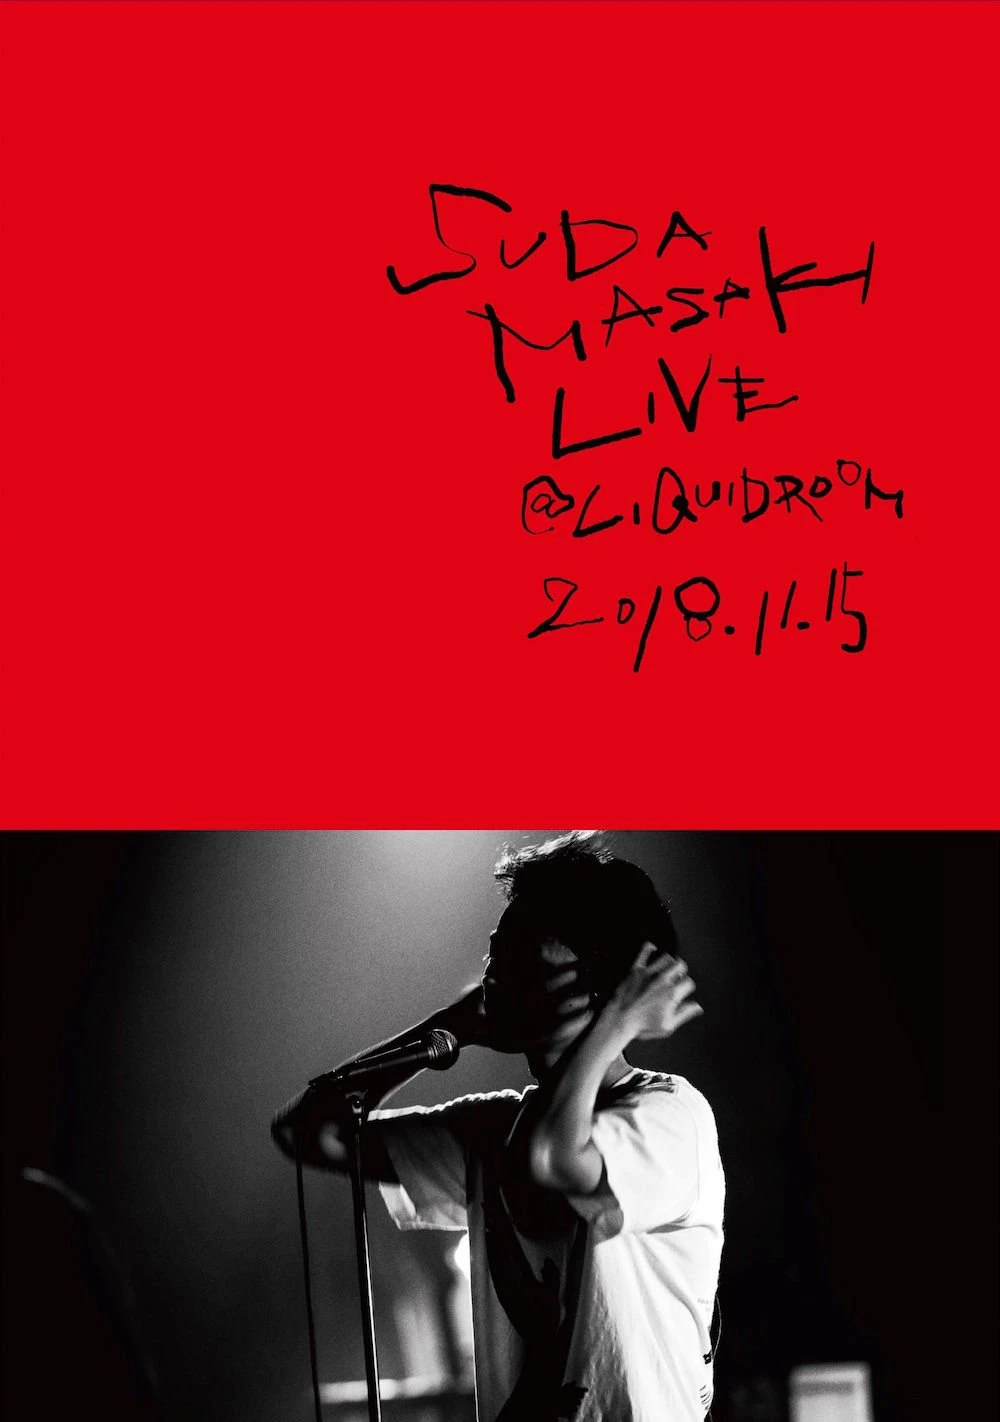 3月6日（水）にリリースされるライブ映像作品『SUDA MASAKI LIVE＠LIQUIDROOM 2018.11.15』